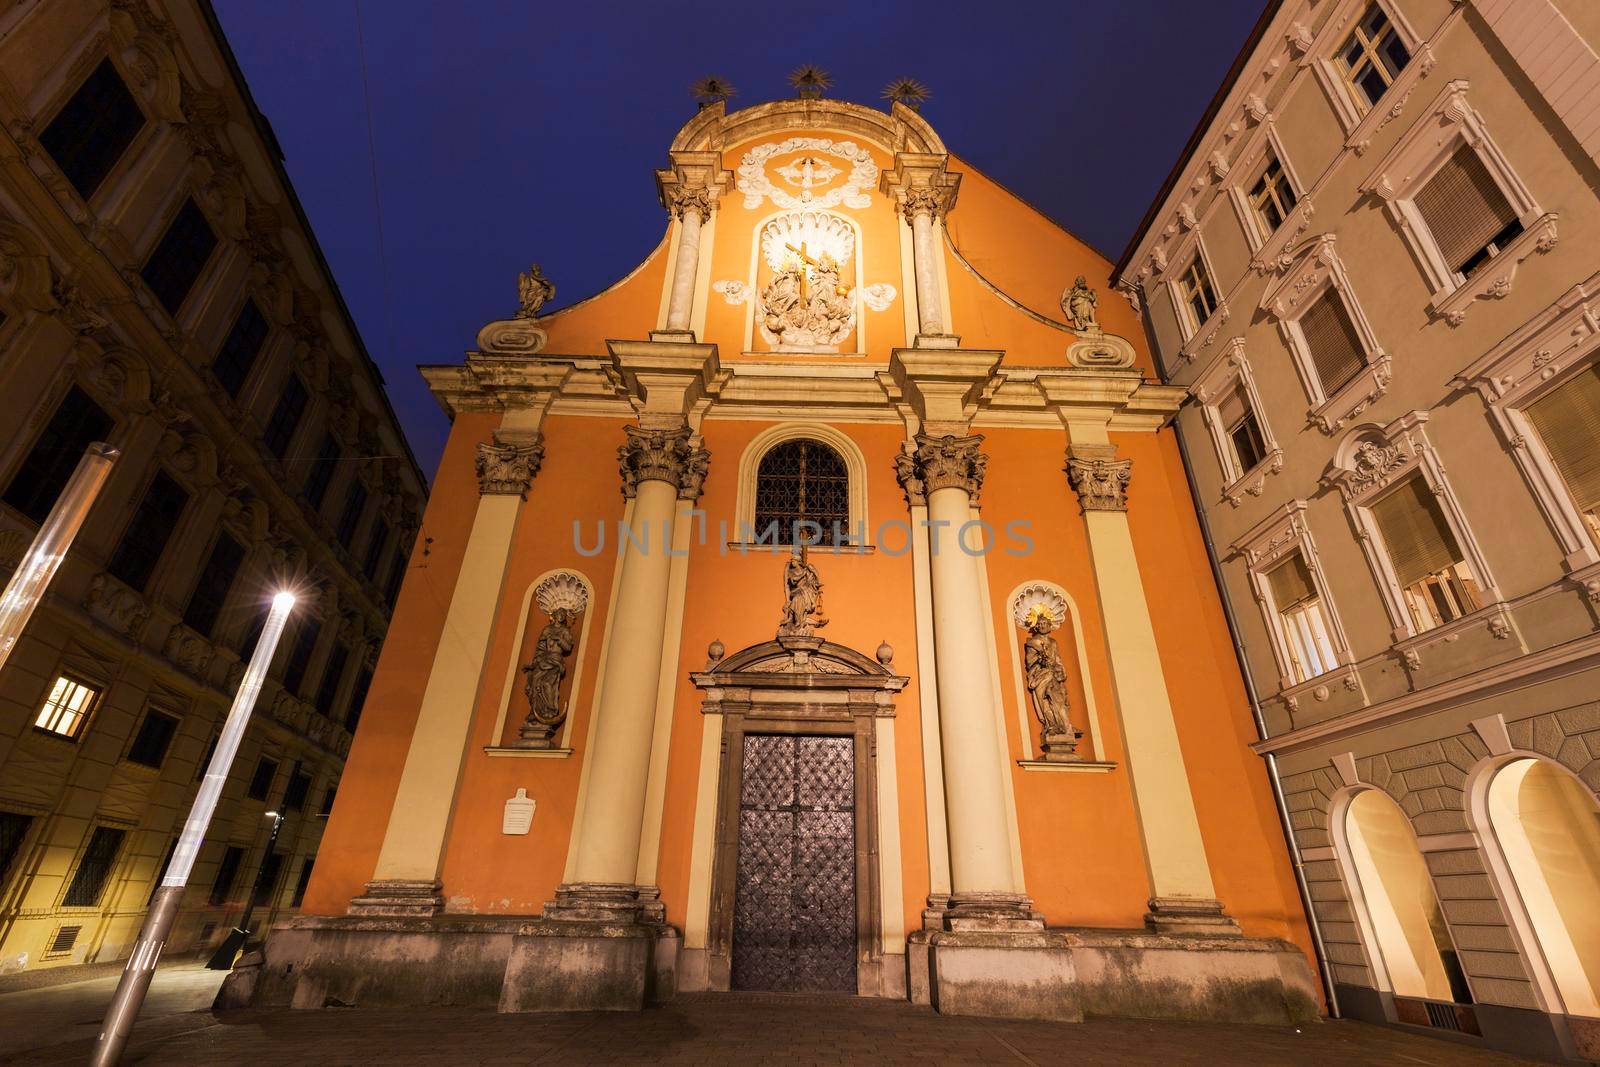 Dreifaltigkeitskirche in Graz at night. Graz, Styria, Austria.